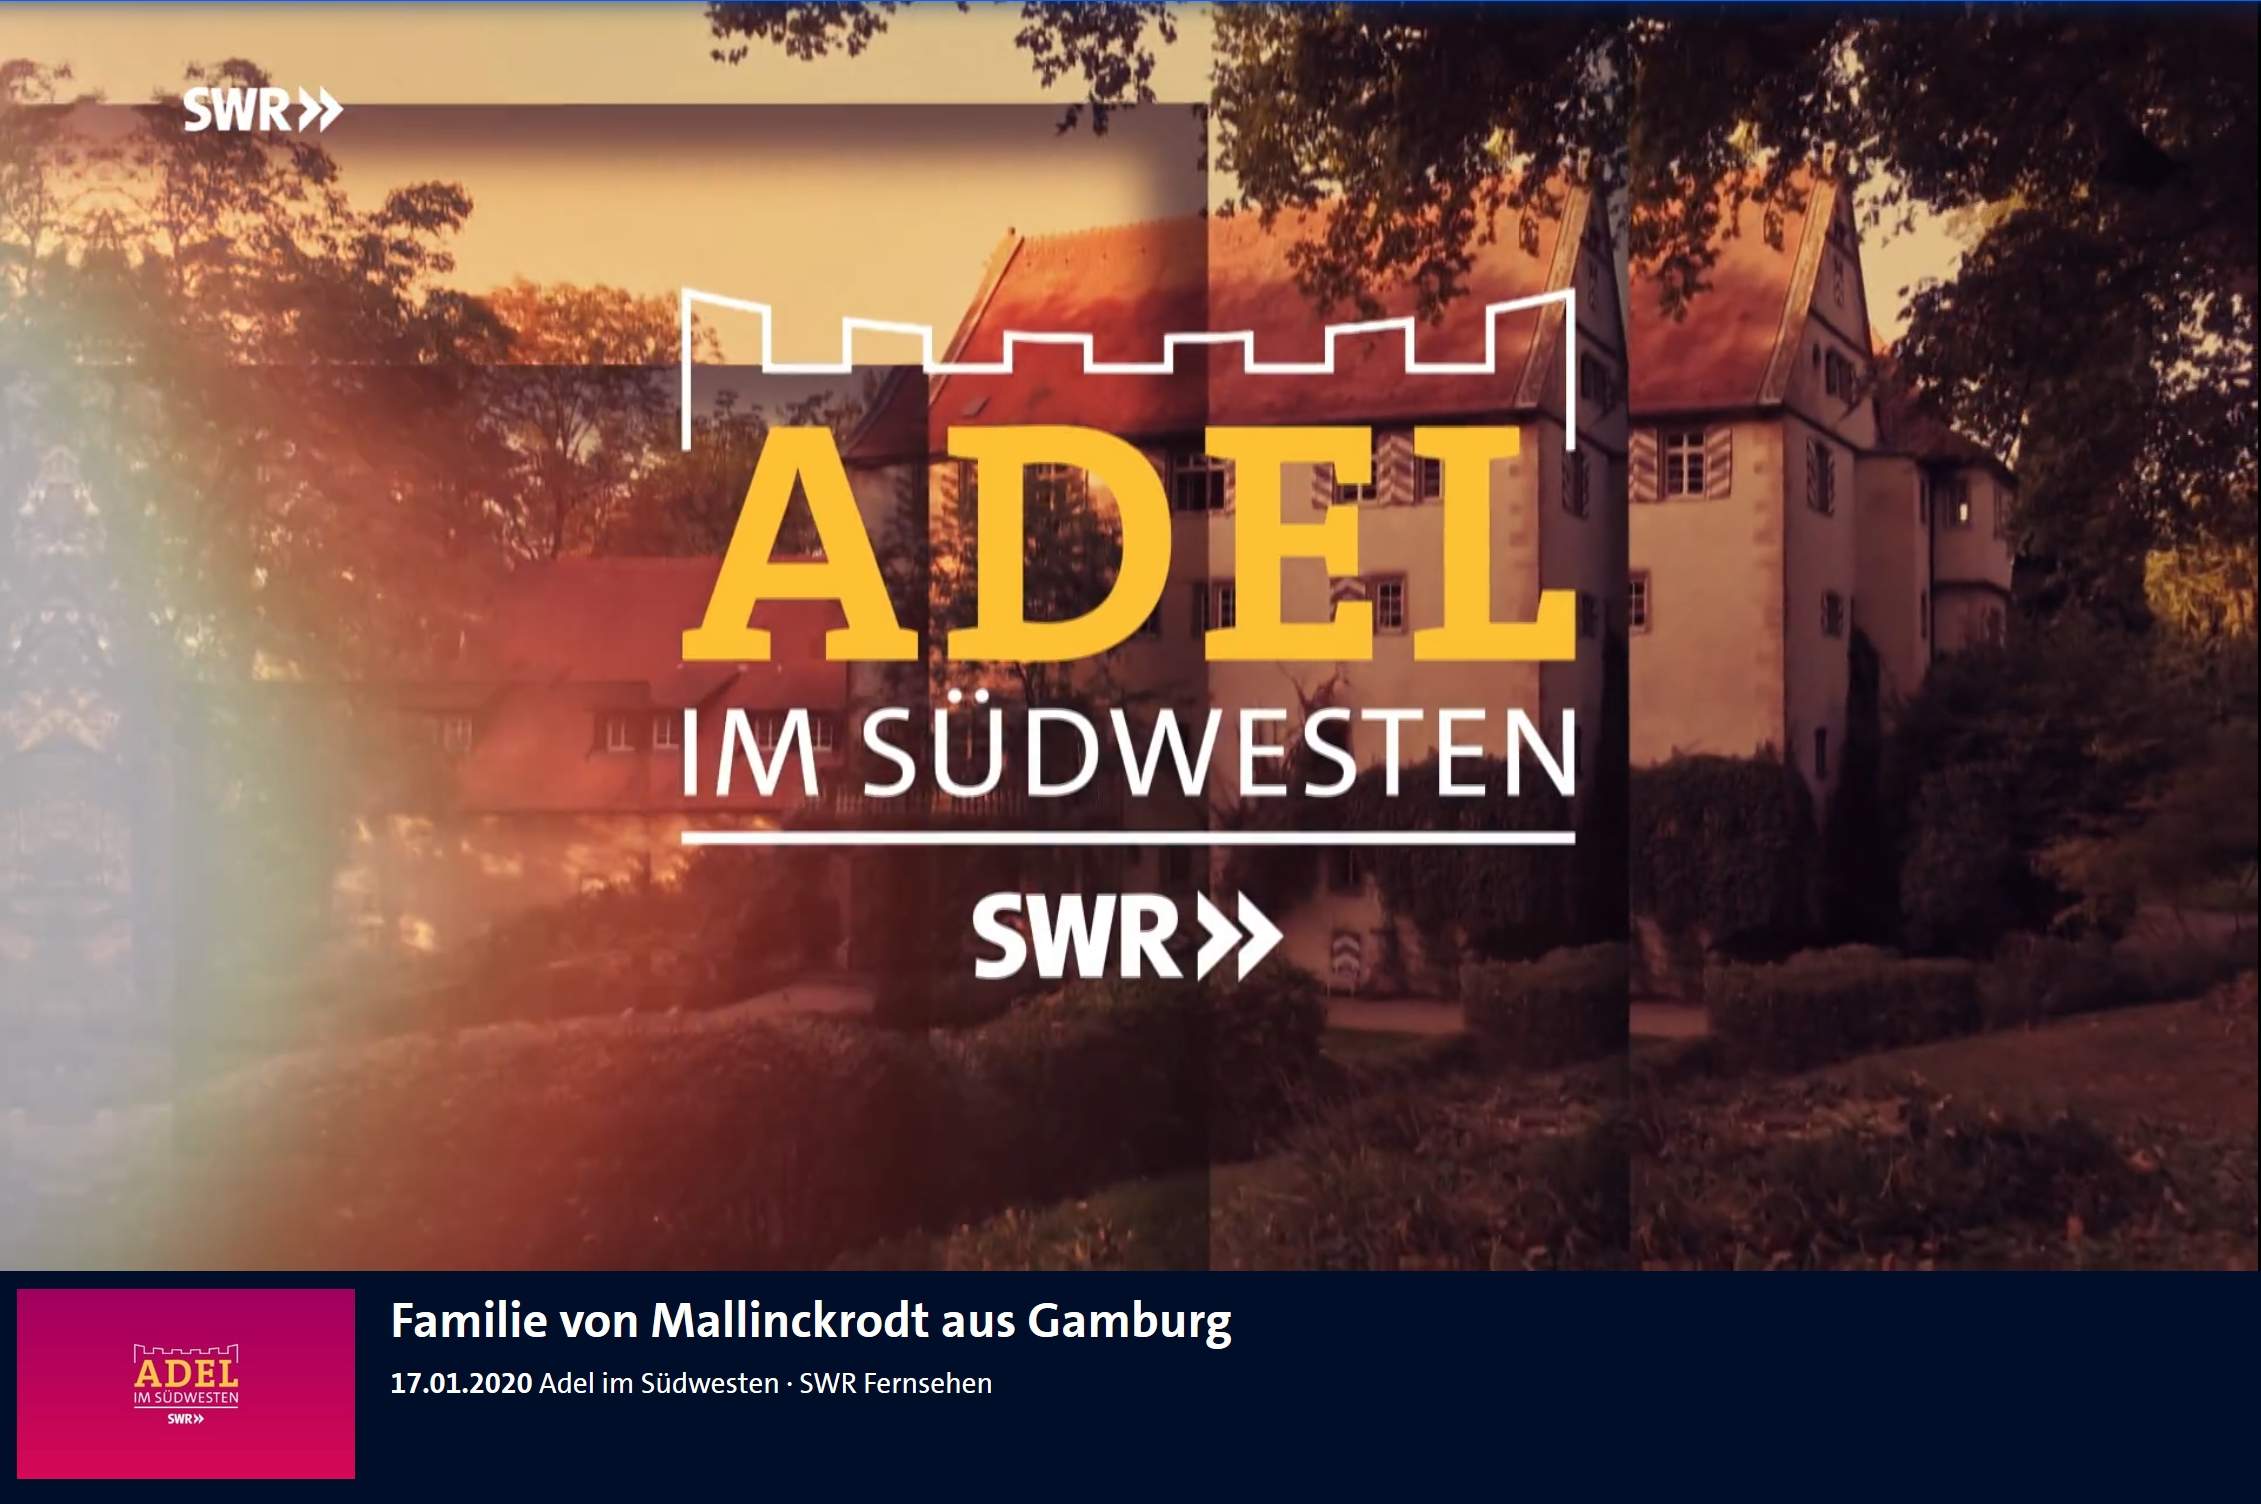 Ferienwohnung Eventlocation Bahnhof Gamburg Liebliches Taubertal ARD SWR Adel im Suedwesten Familie von Mallinckrodt aus Gamburg